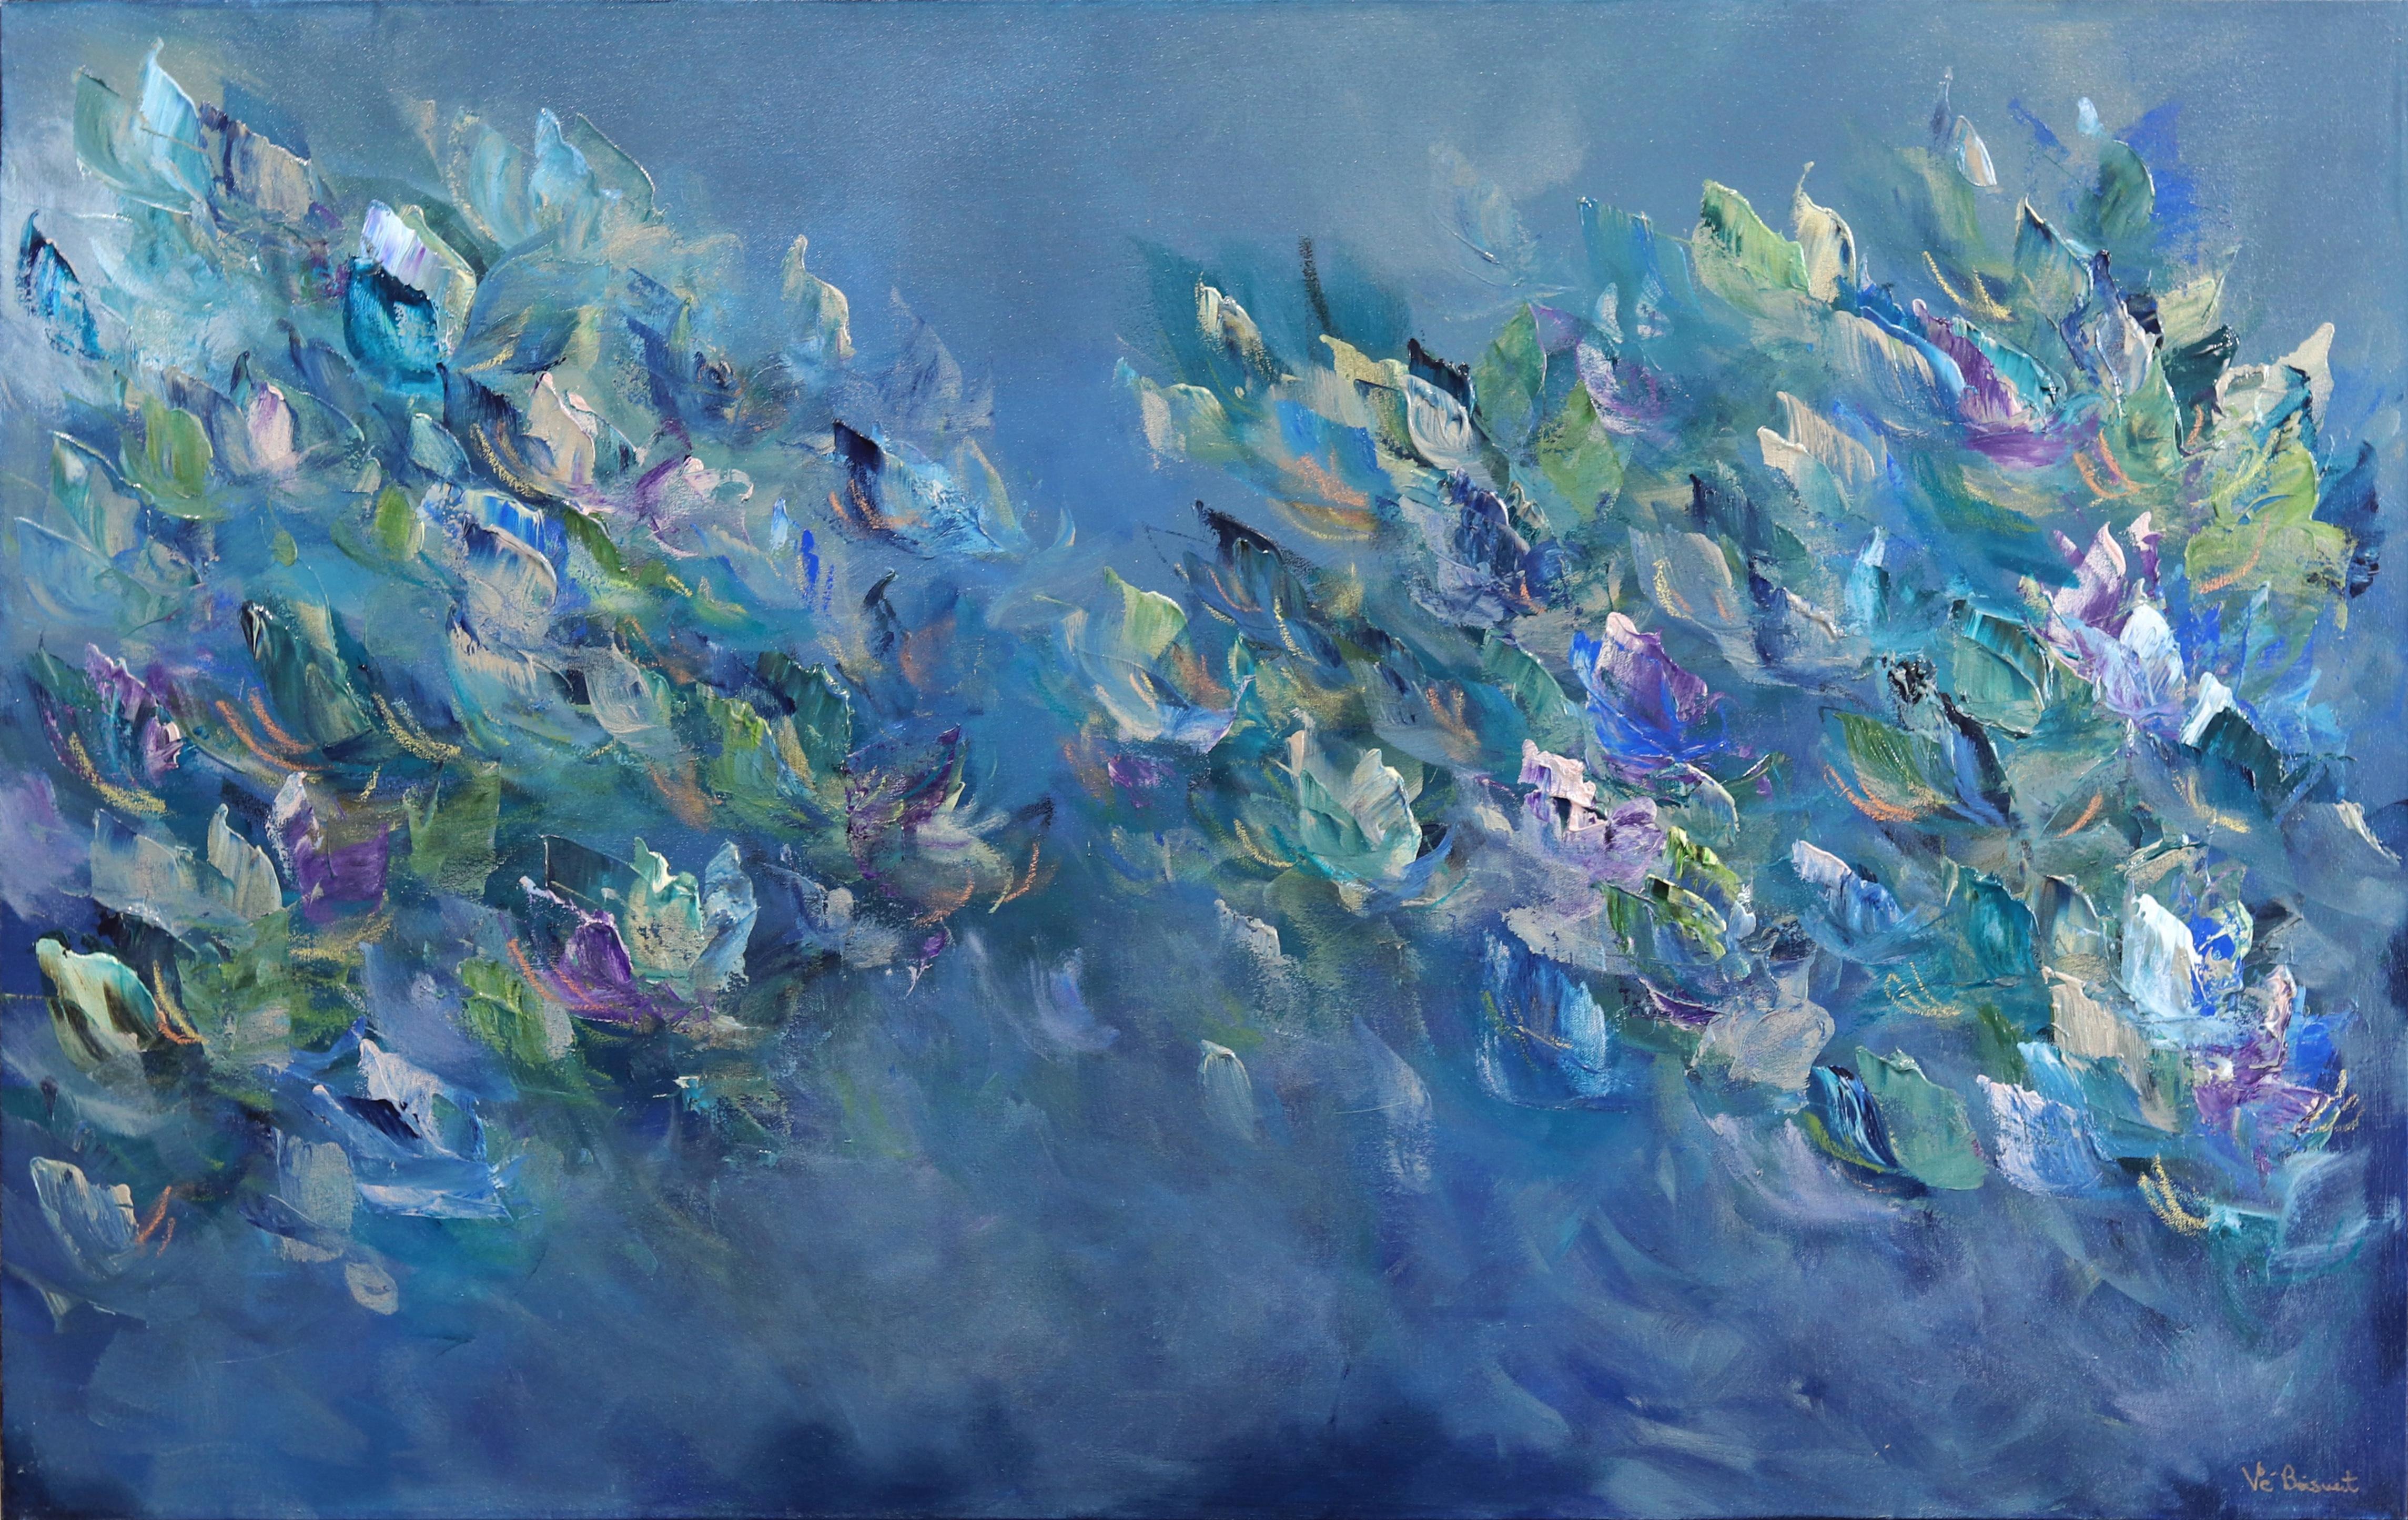 Landscape Painting Vè Boisvert - La beauté de la mer - peinture florale abstraite bleue